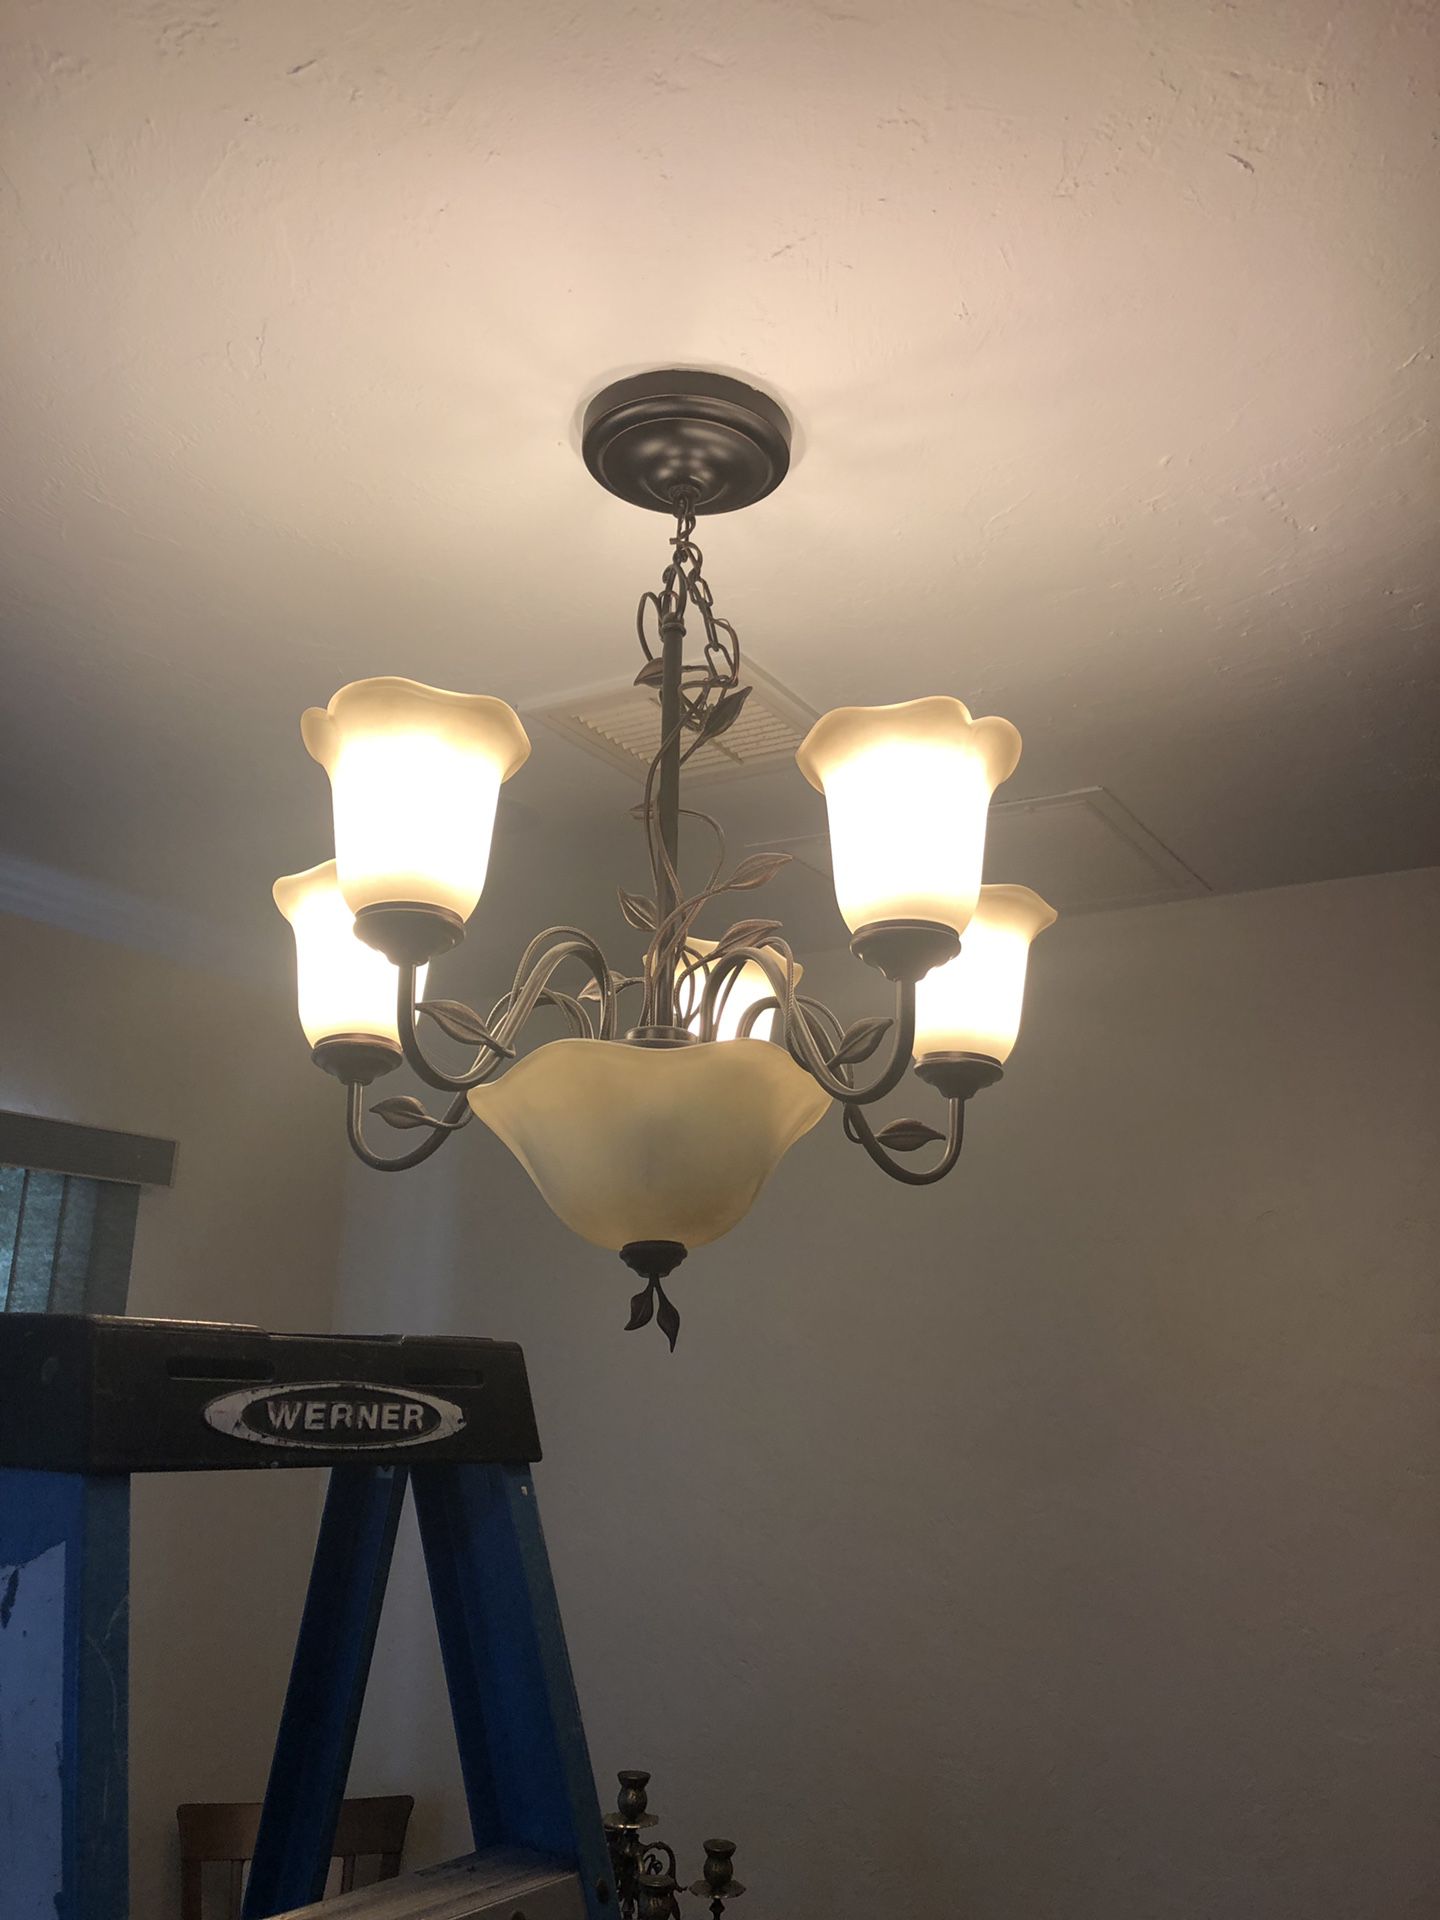 Lamp chandelier FREE